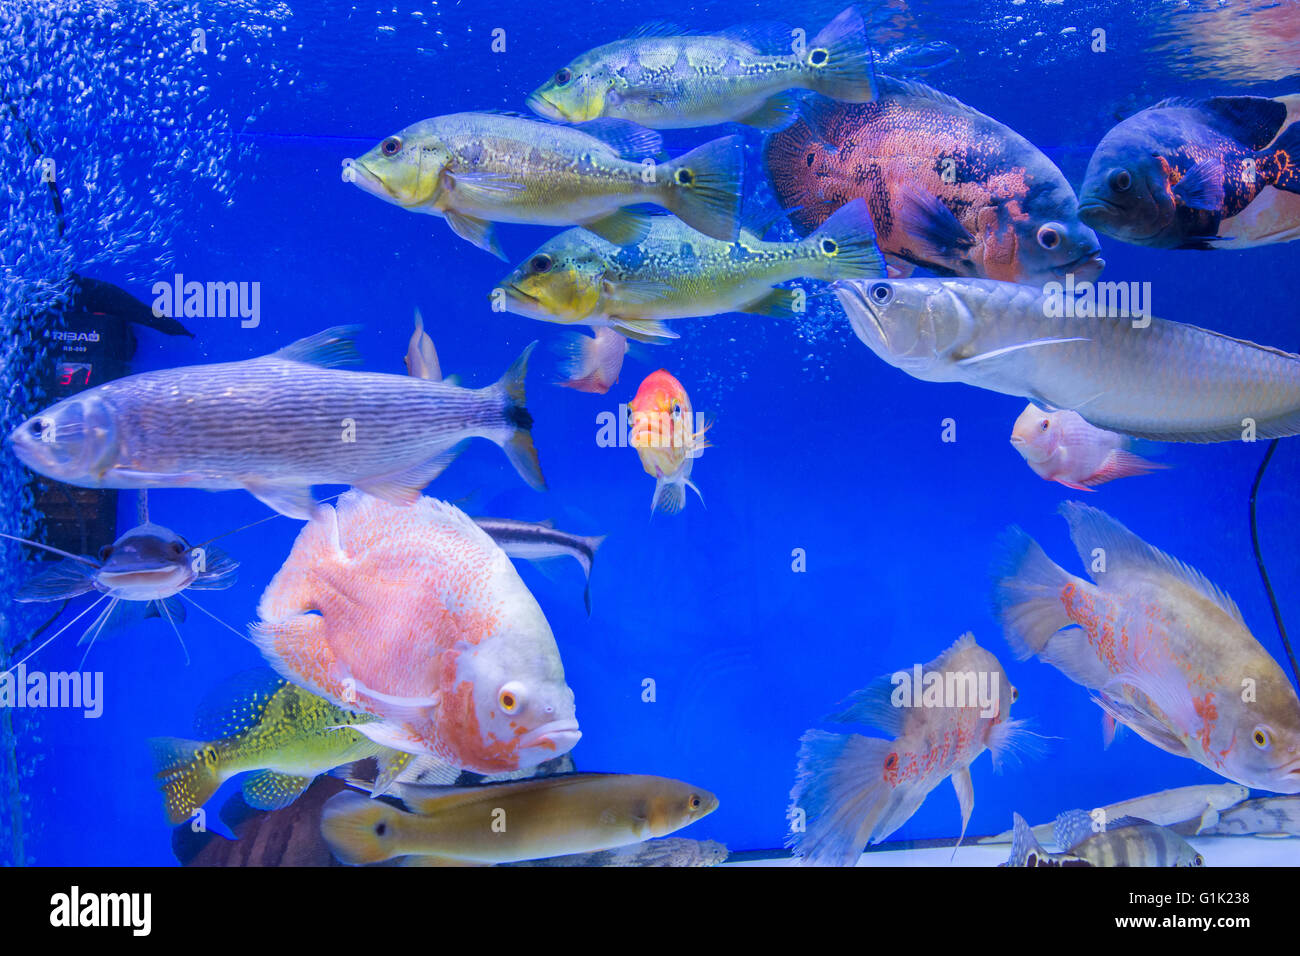 Aquatic species on sale Stock Photo